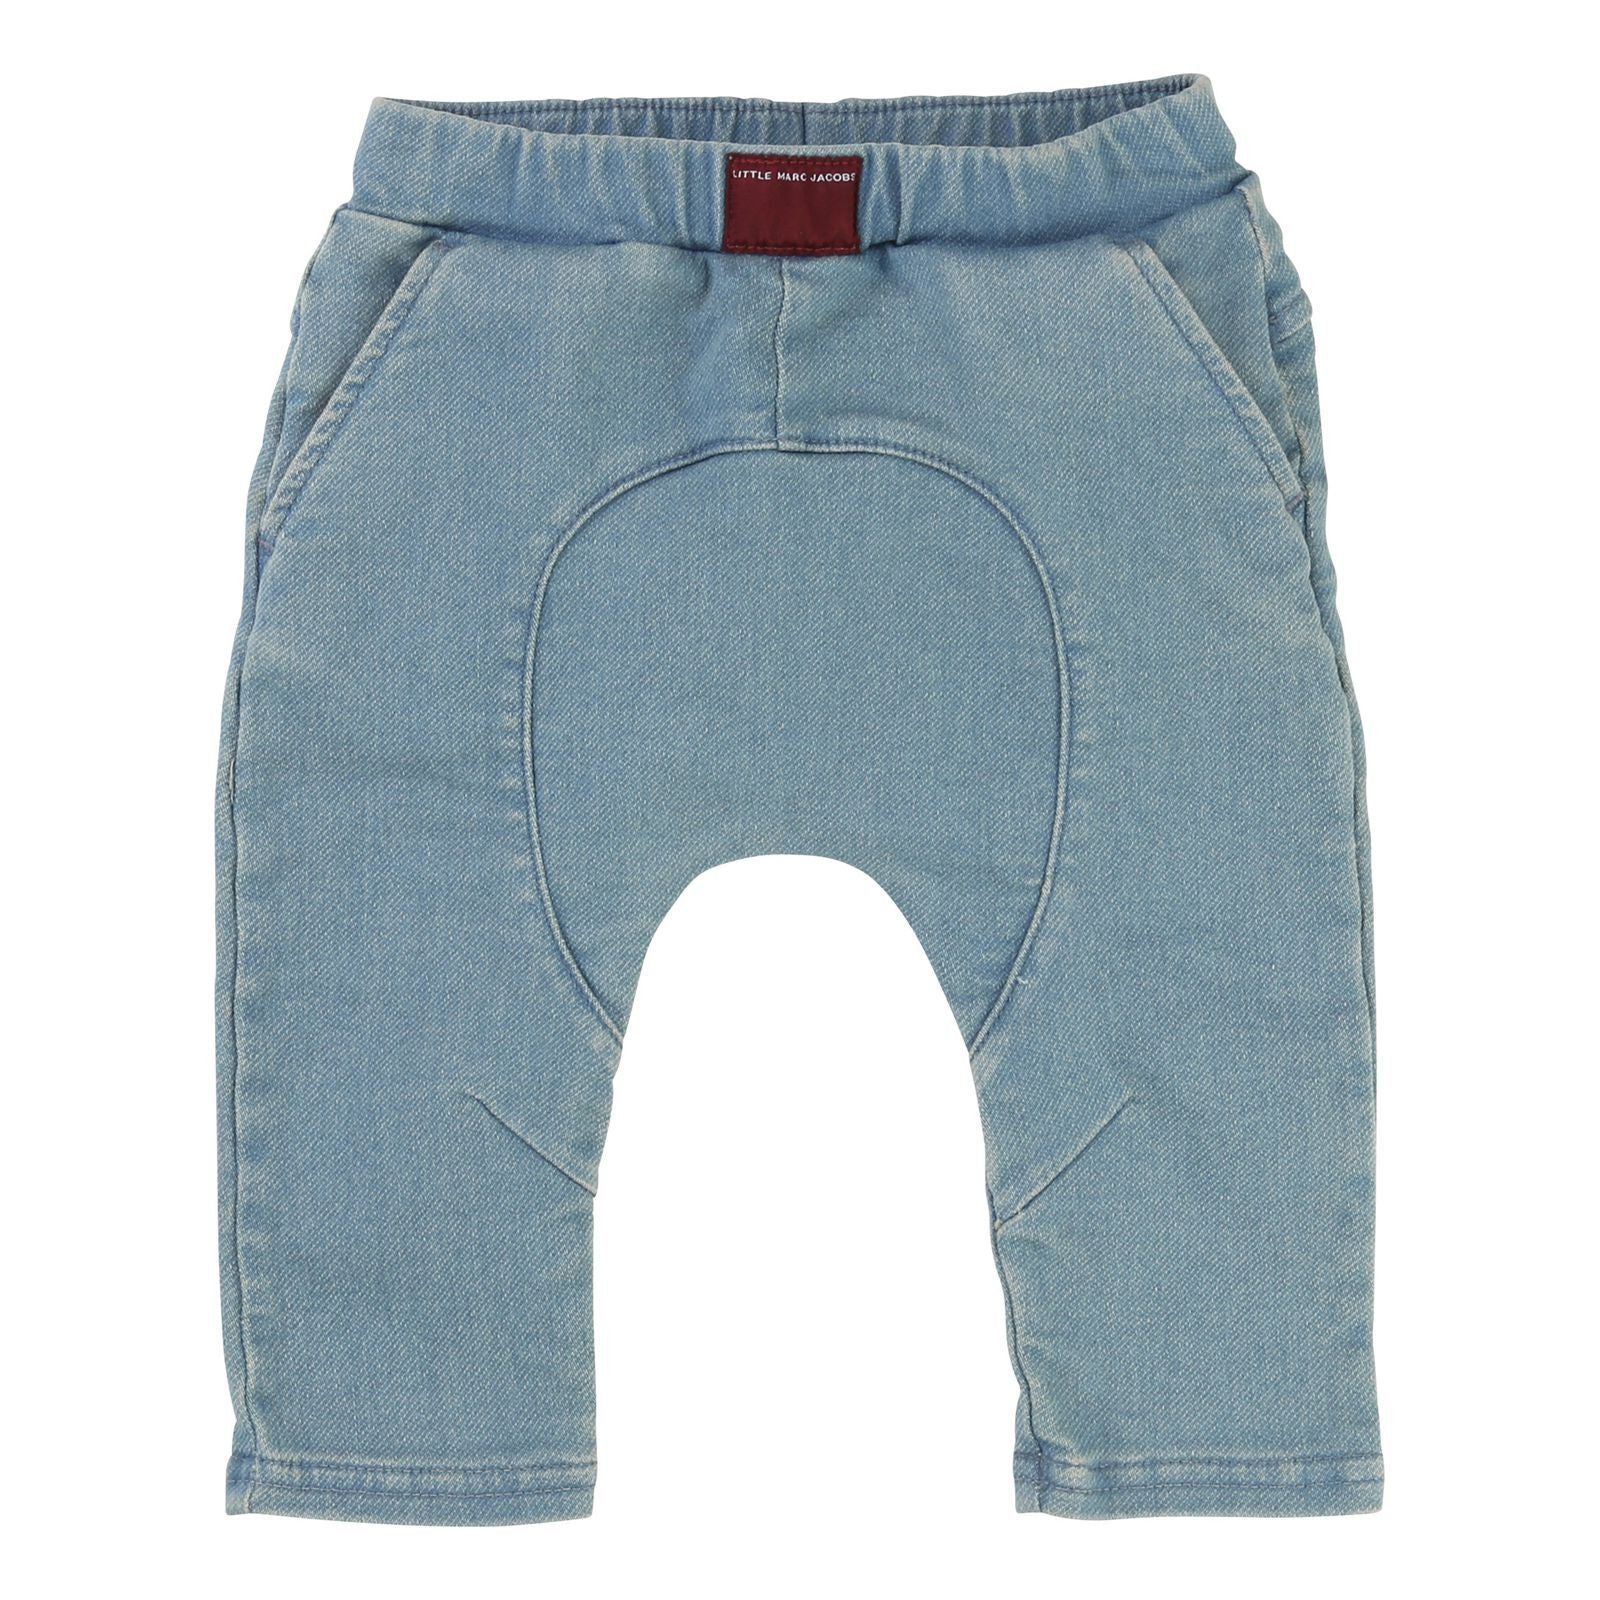 Baby Boys Blue Denim Cotton Jeans - CÉMAROSE | Children's Fashion Store